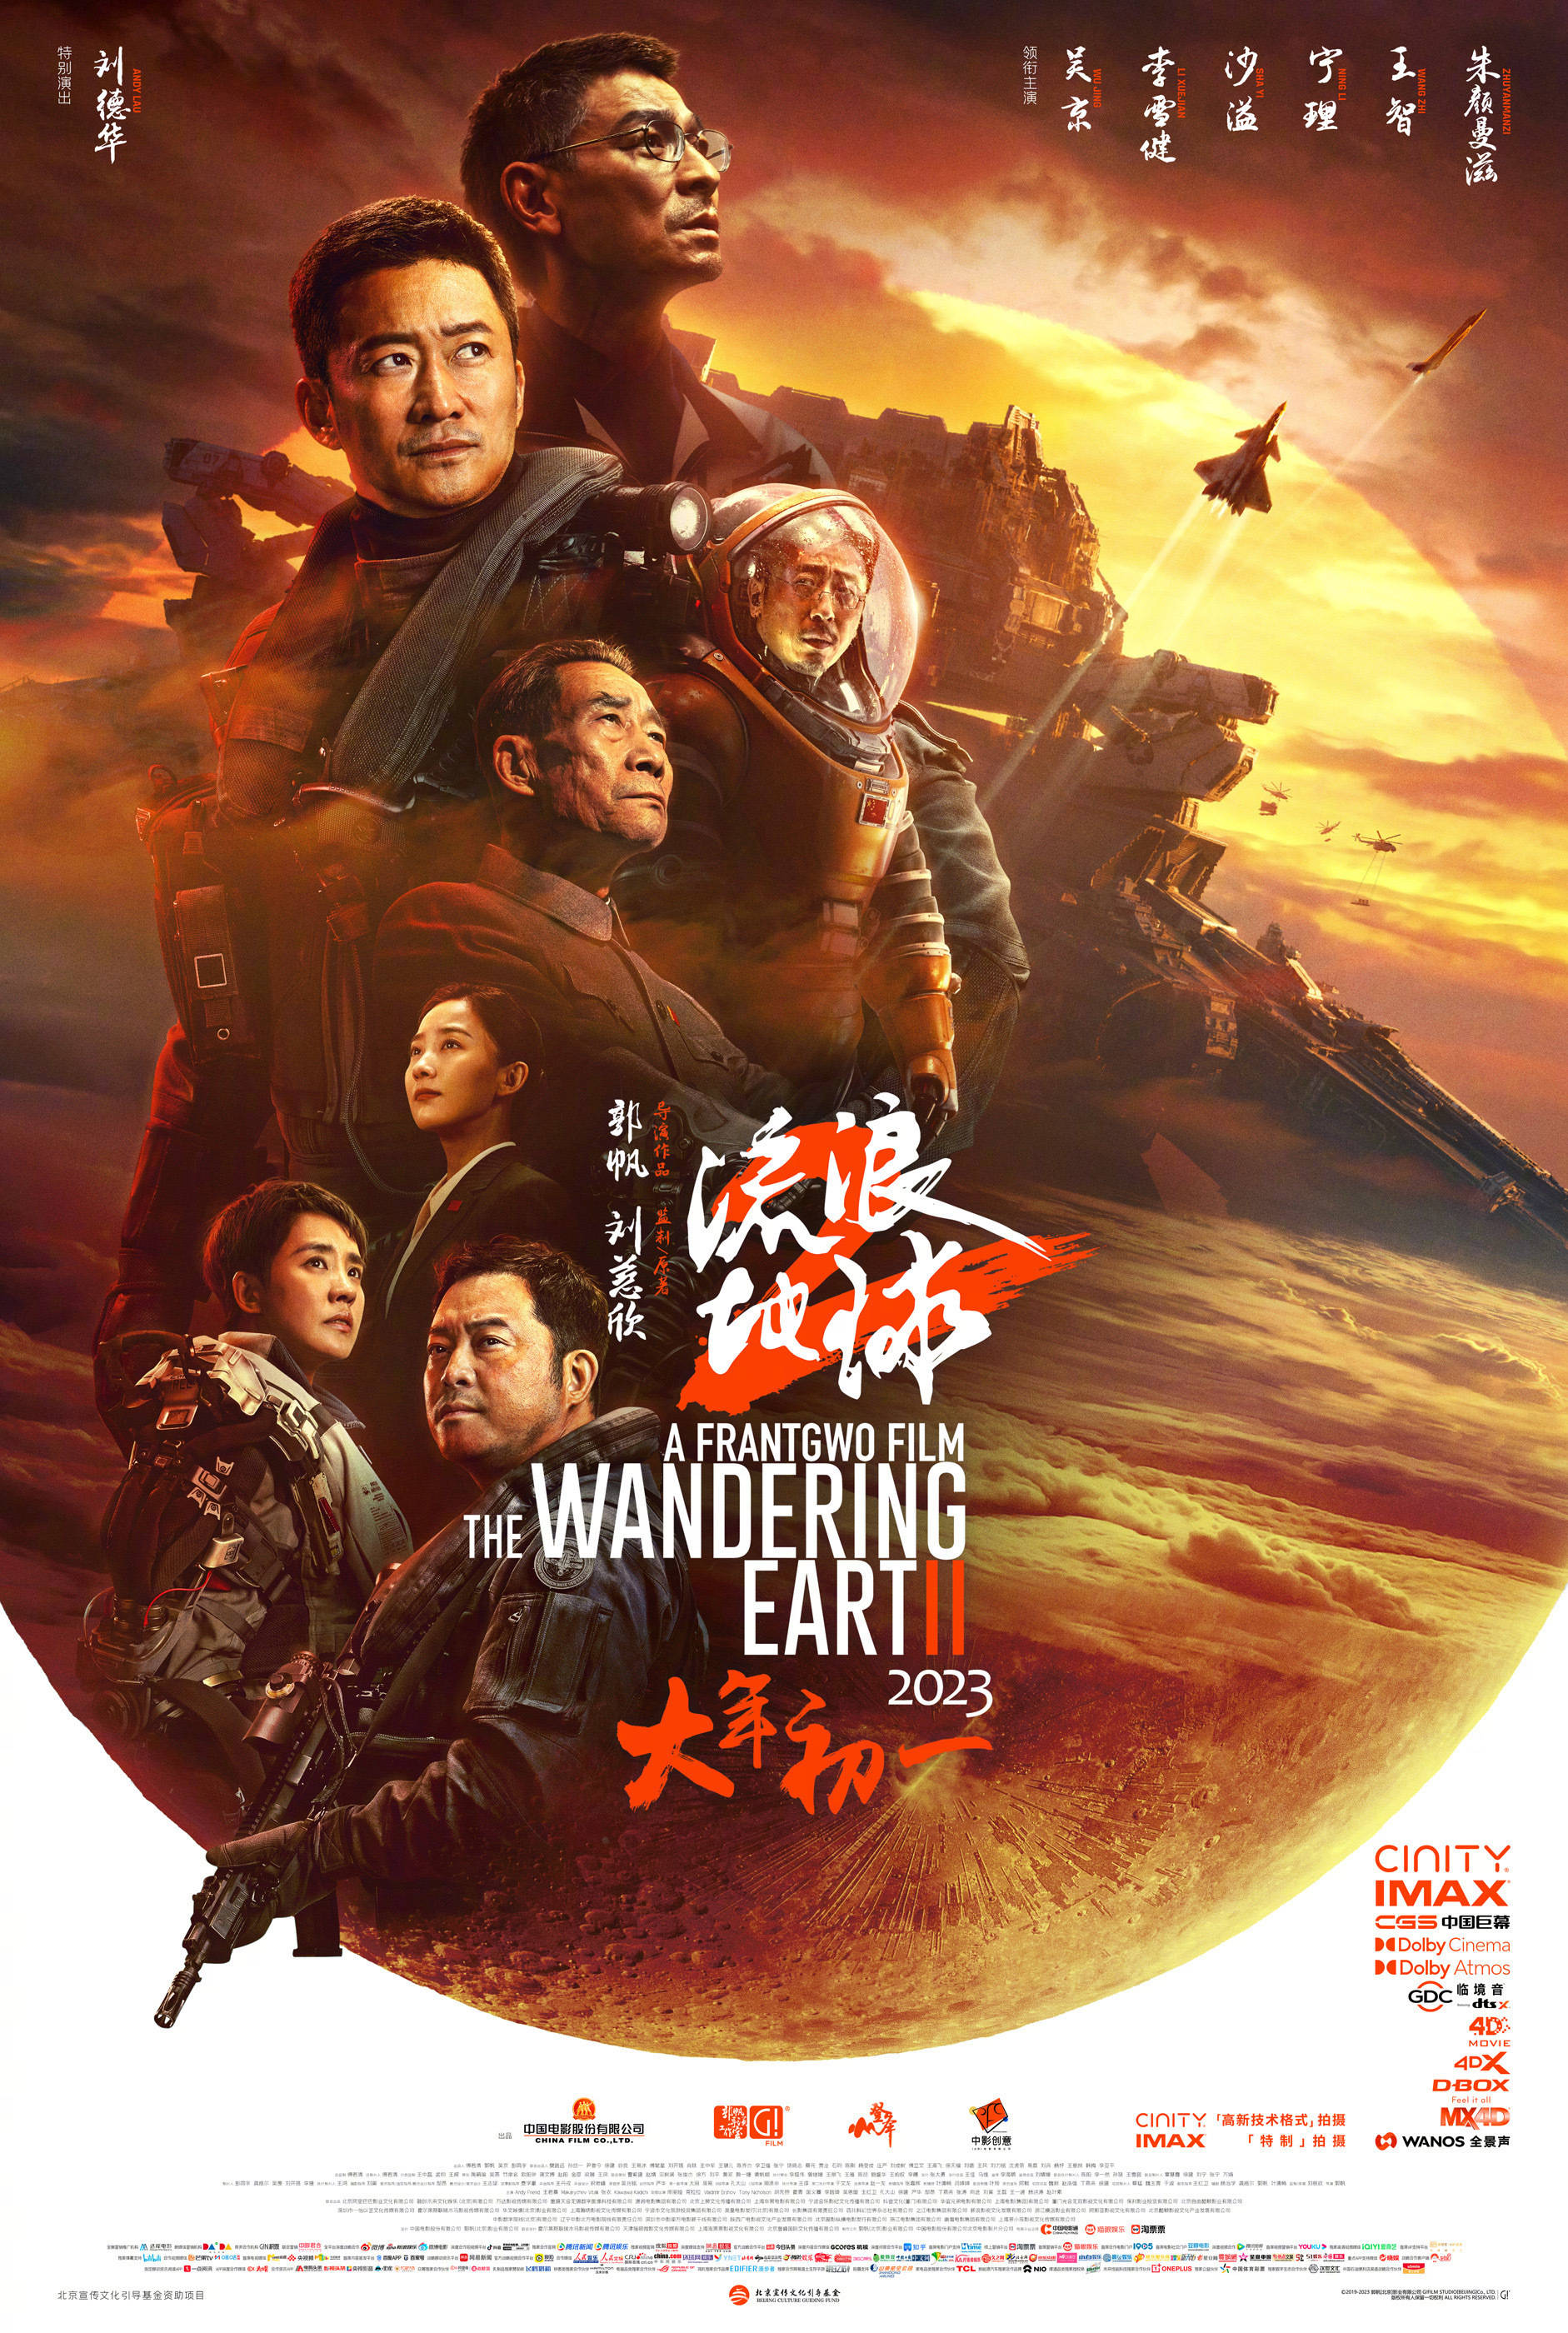 郭帆执导《流浪地球2》密钥延期至3月21日 上映25天累计票房37.34亿